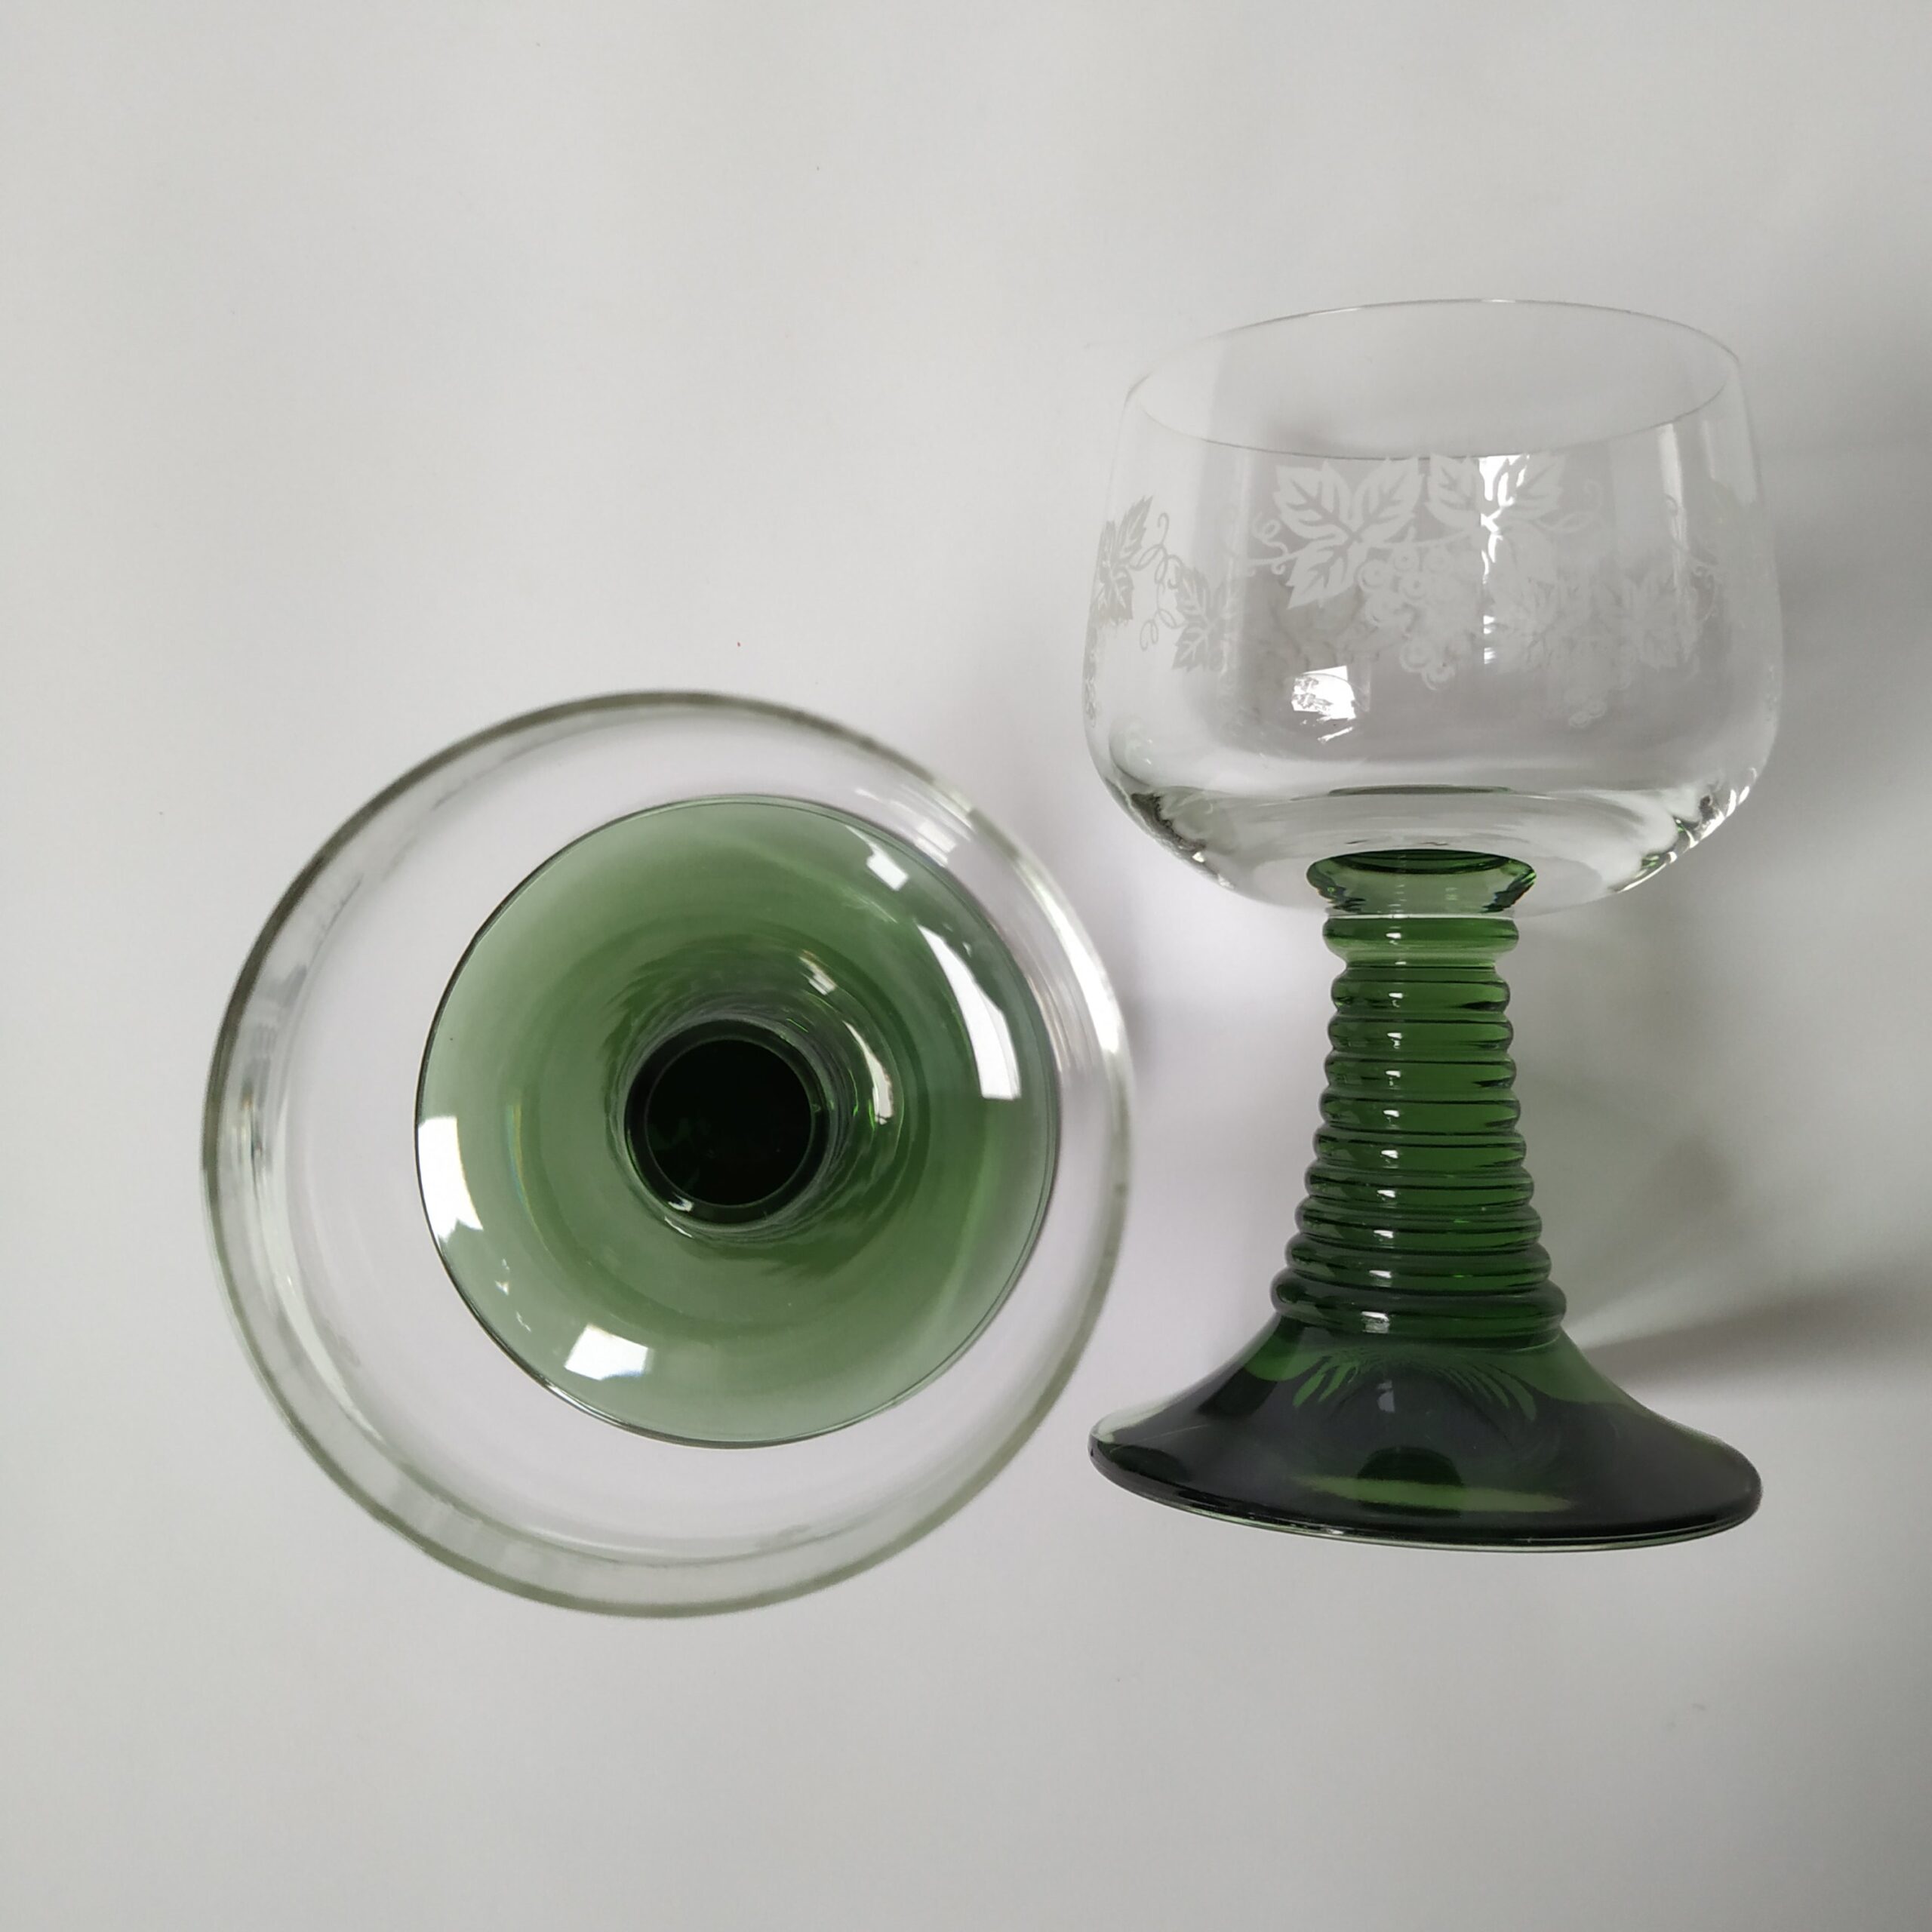 Wijnglazen – moezelglazen met groene voet – afbeelding druiventak – inhoud 200 ml (2)